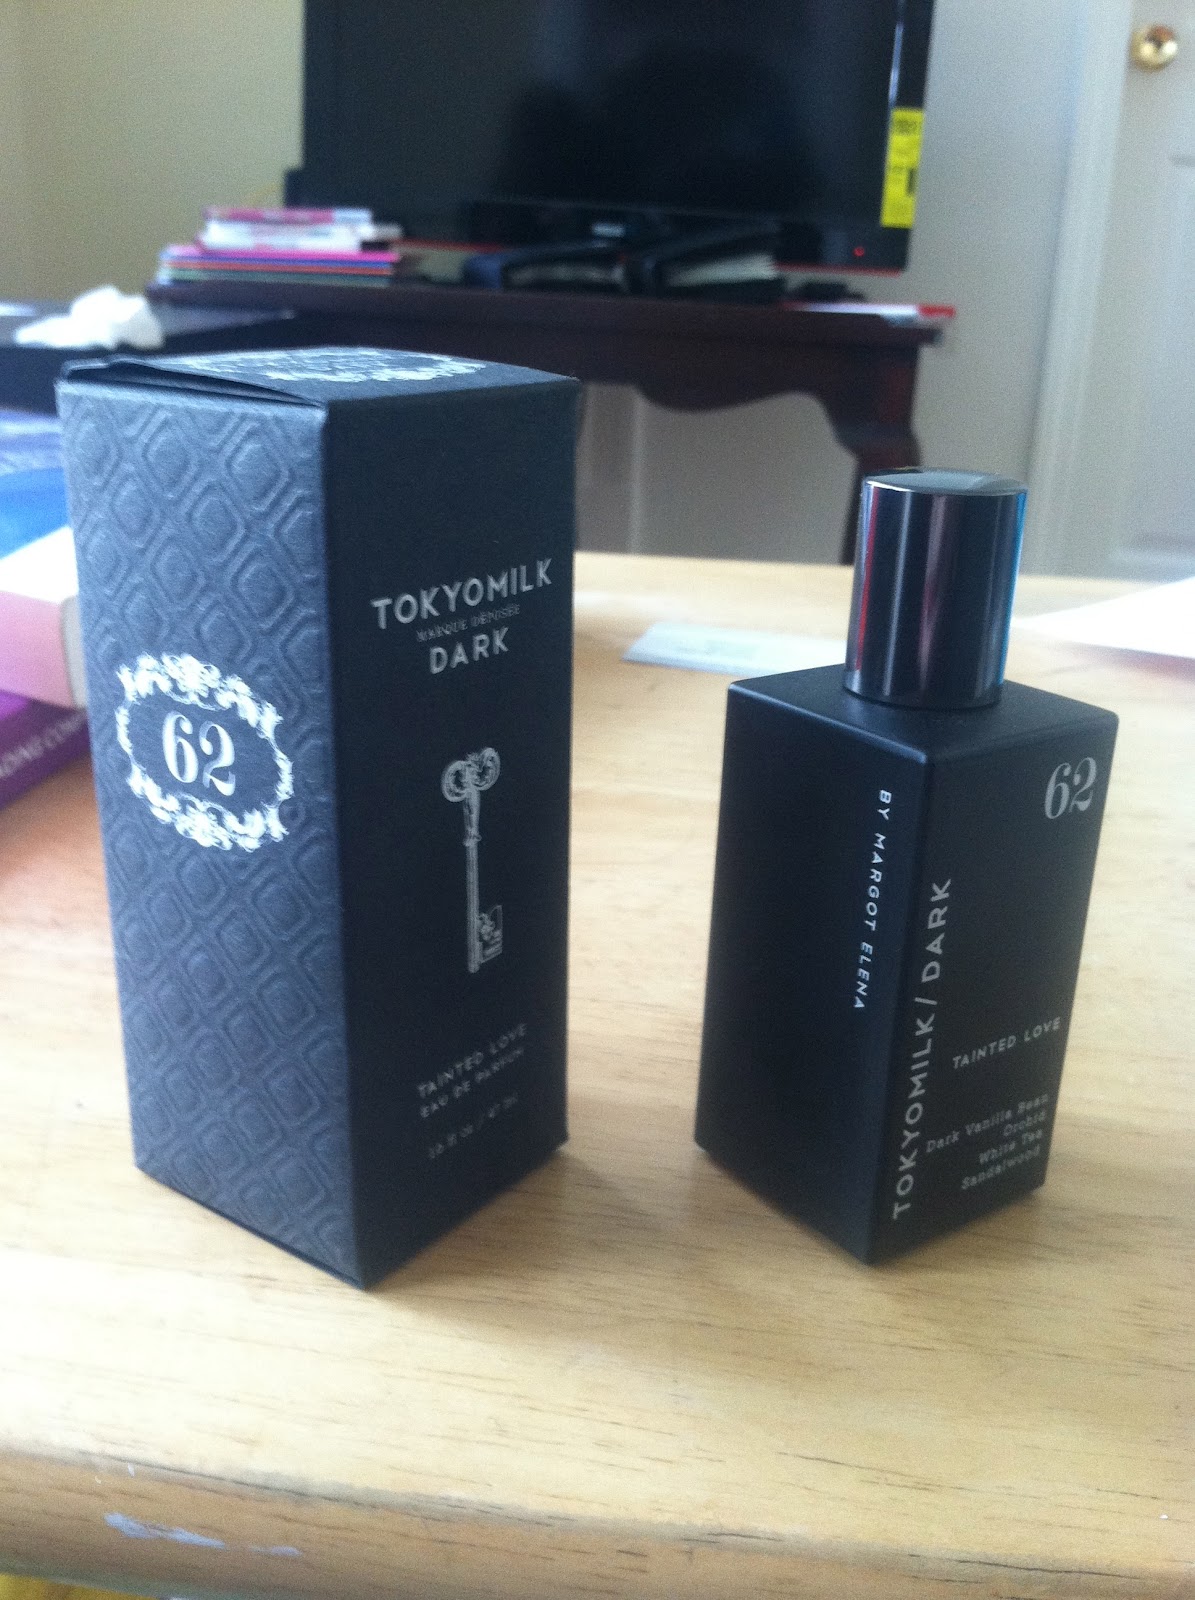 awkward CHIC: TokyoMilk Dark Tainted Love No. 62 Perfume